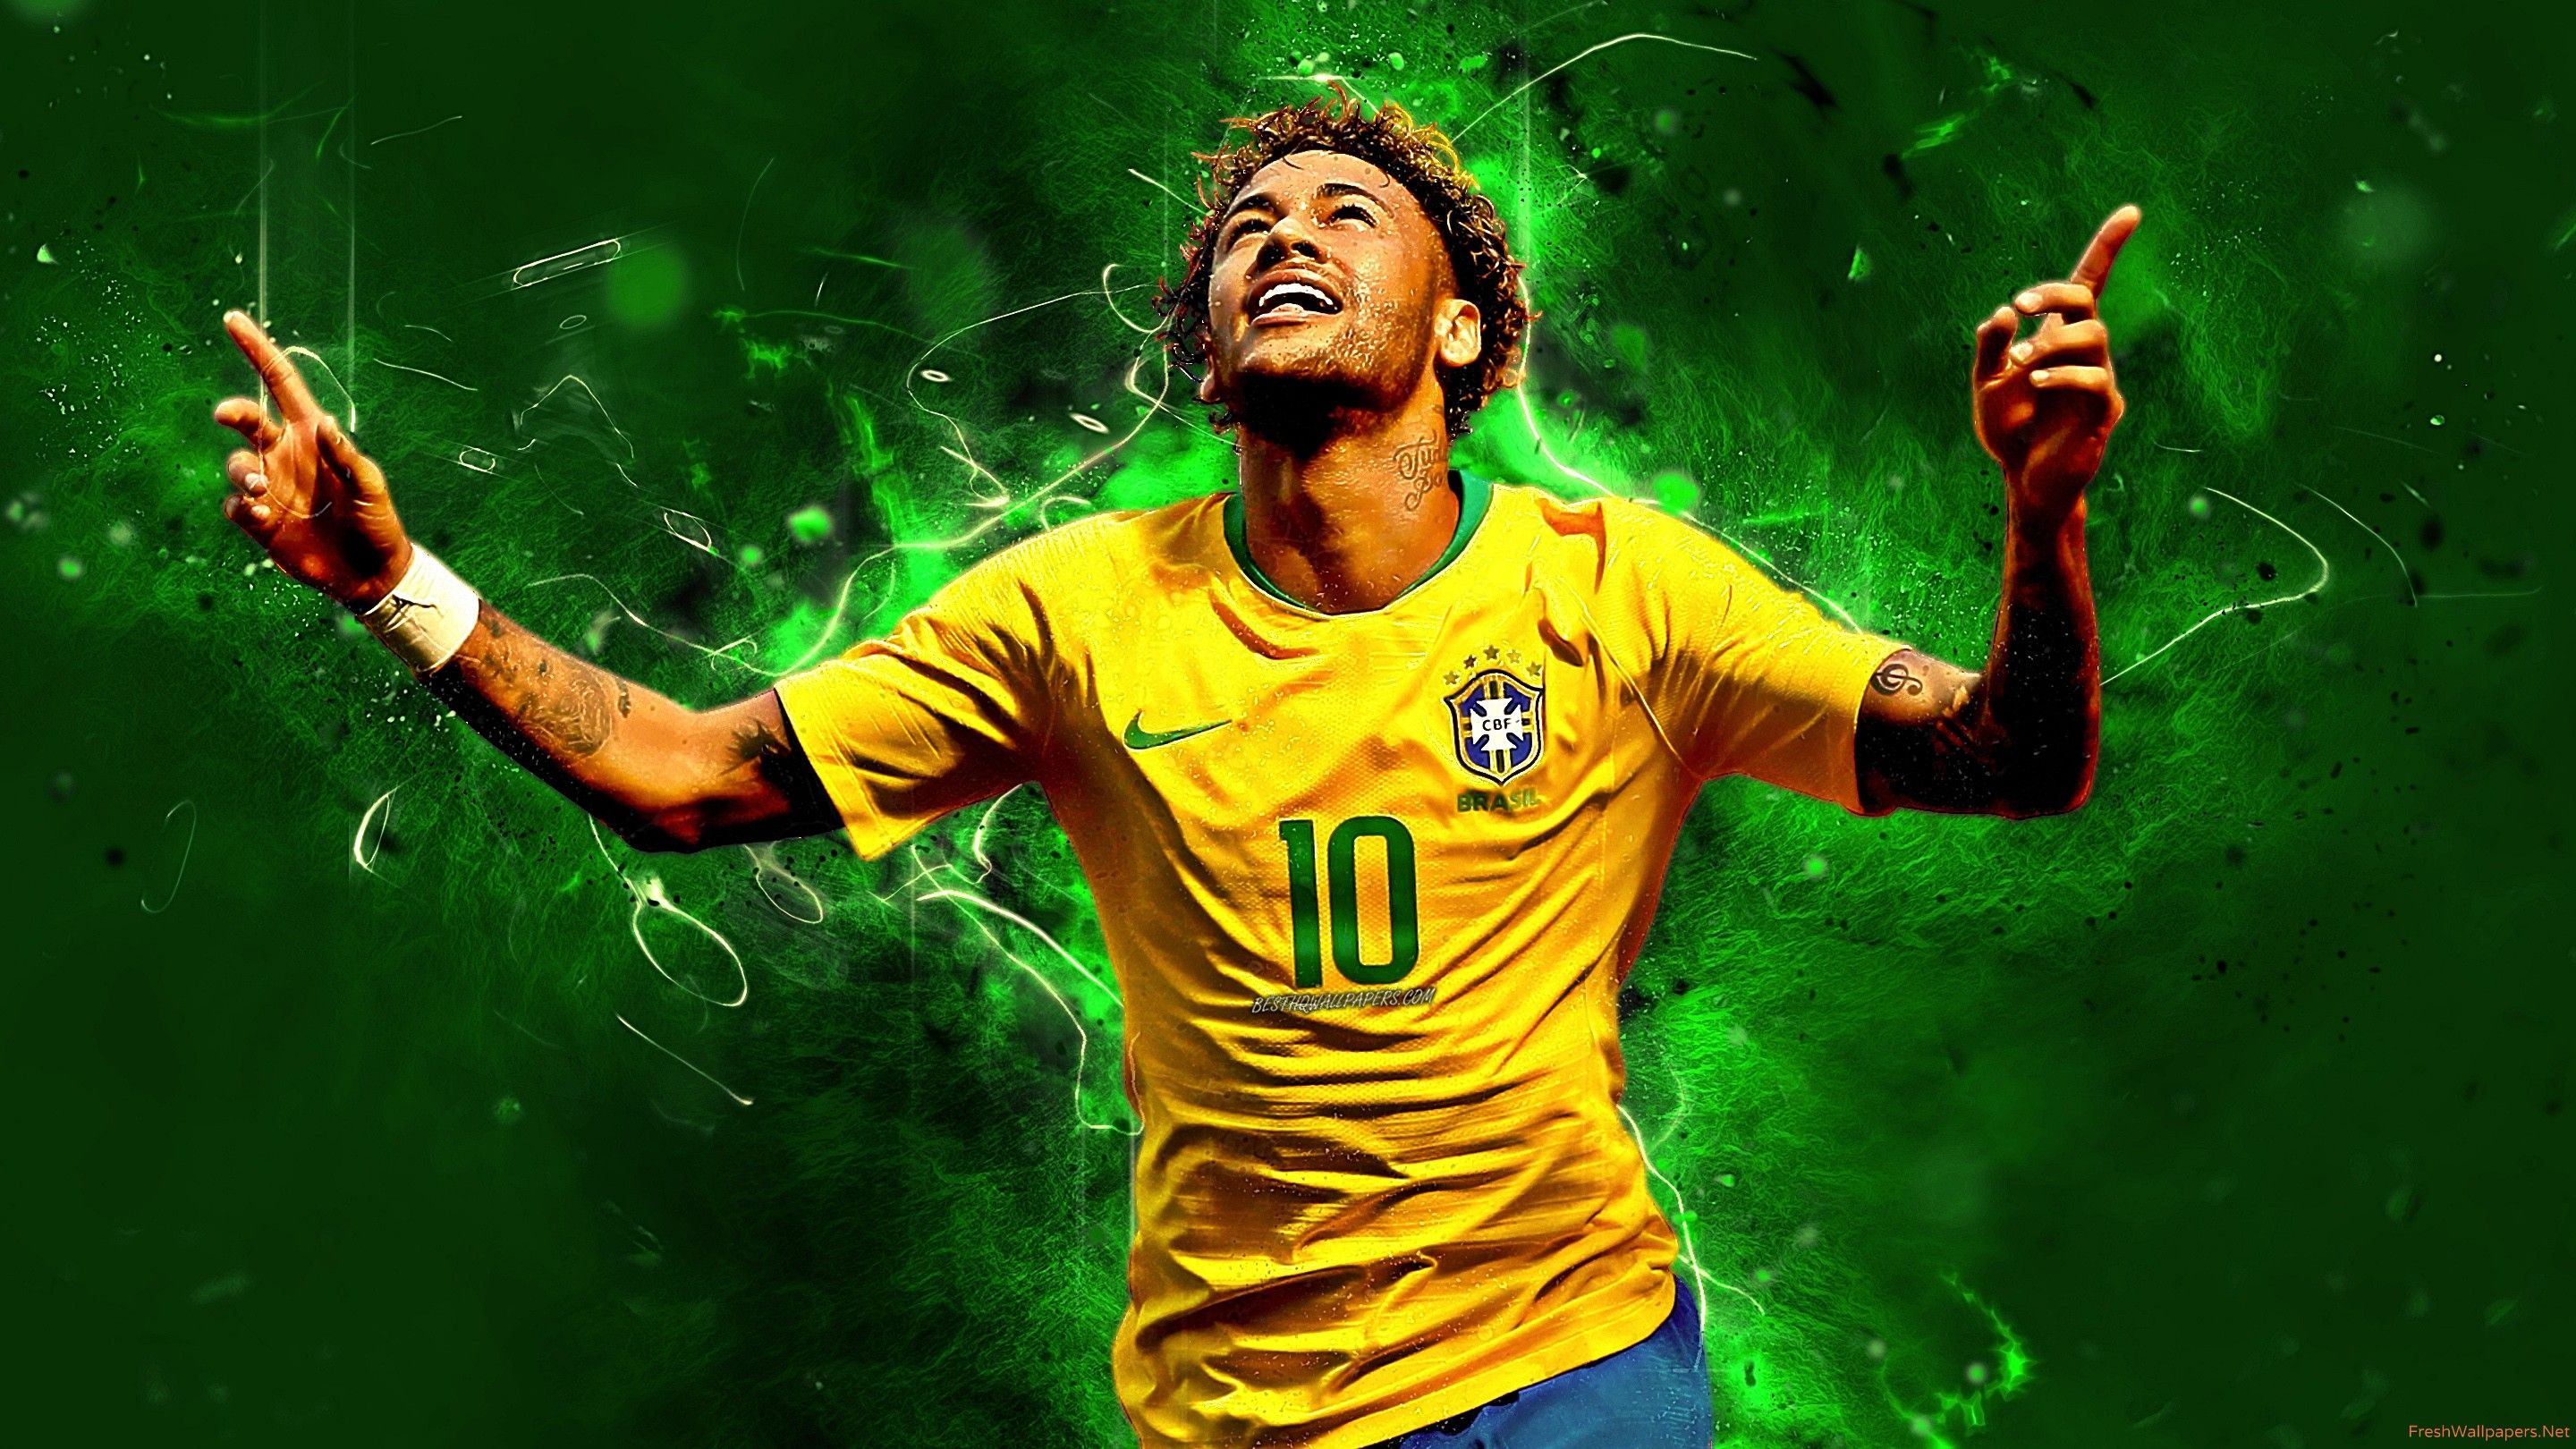 Neymar fondos de pantalla | Papeles pintados frescos